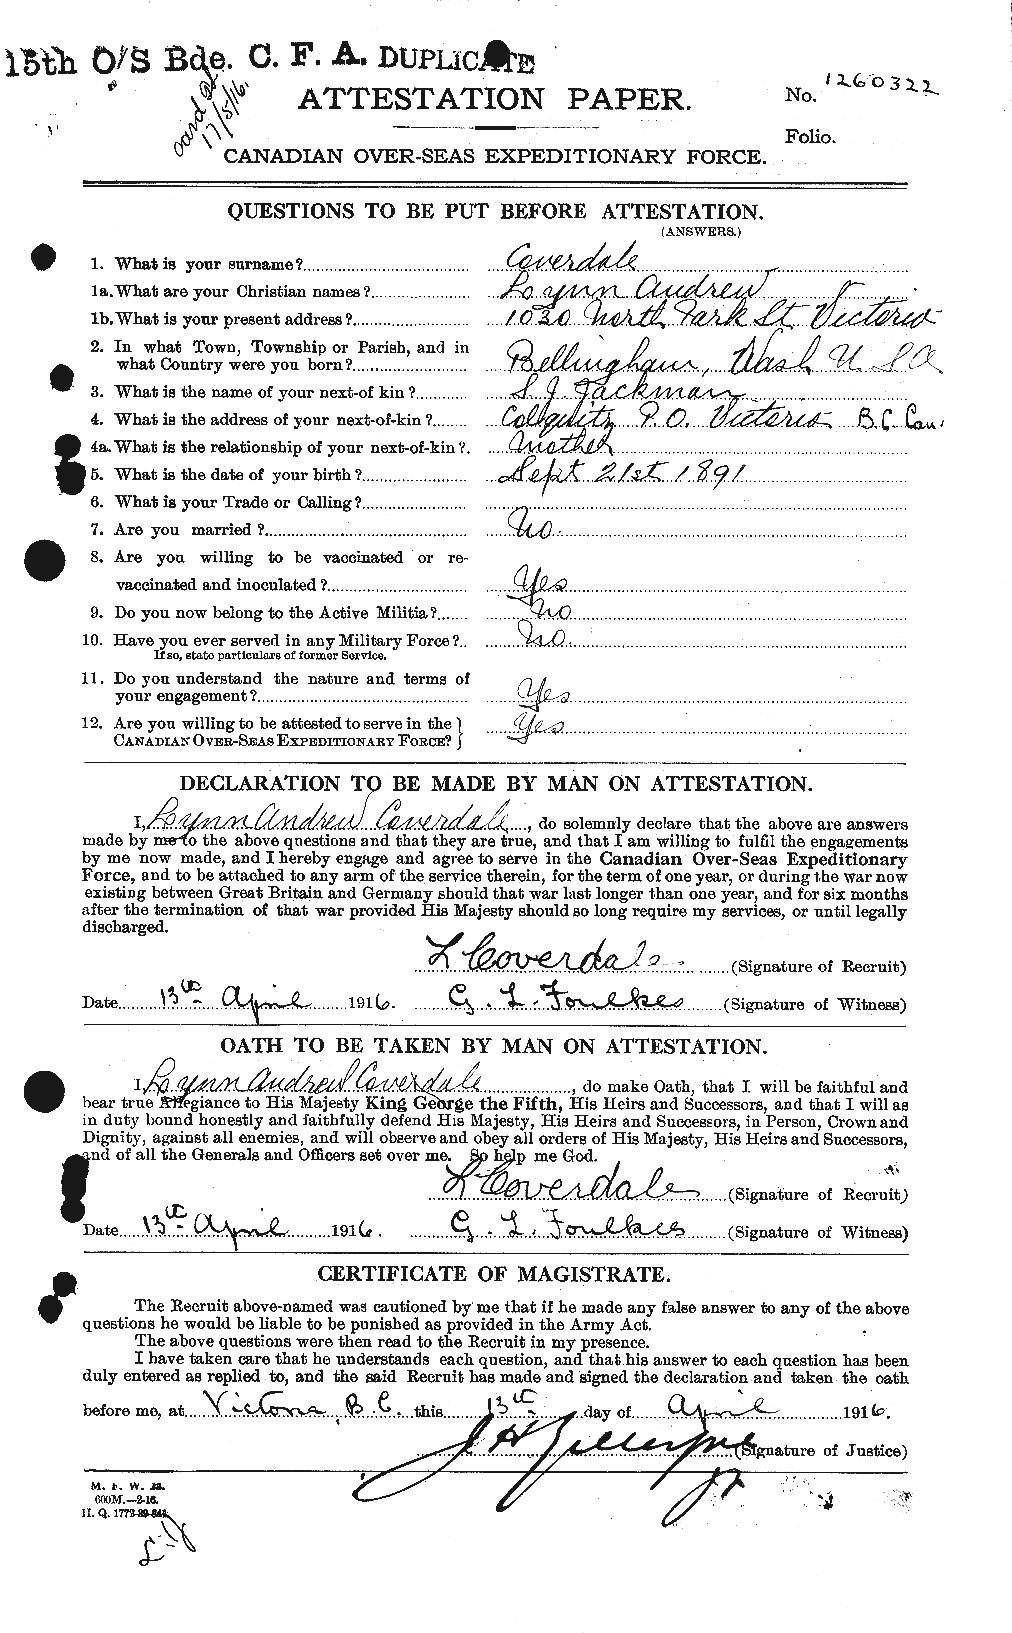 Dossiers du Personnel de la Première Guerre mondiale - CEC 059455a